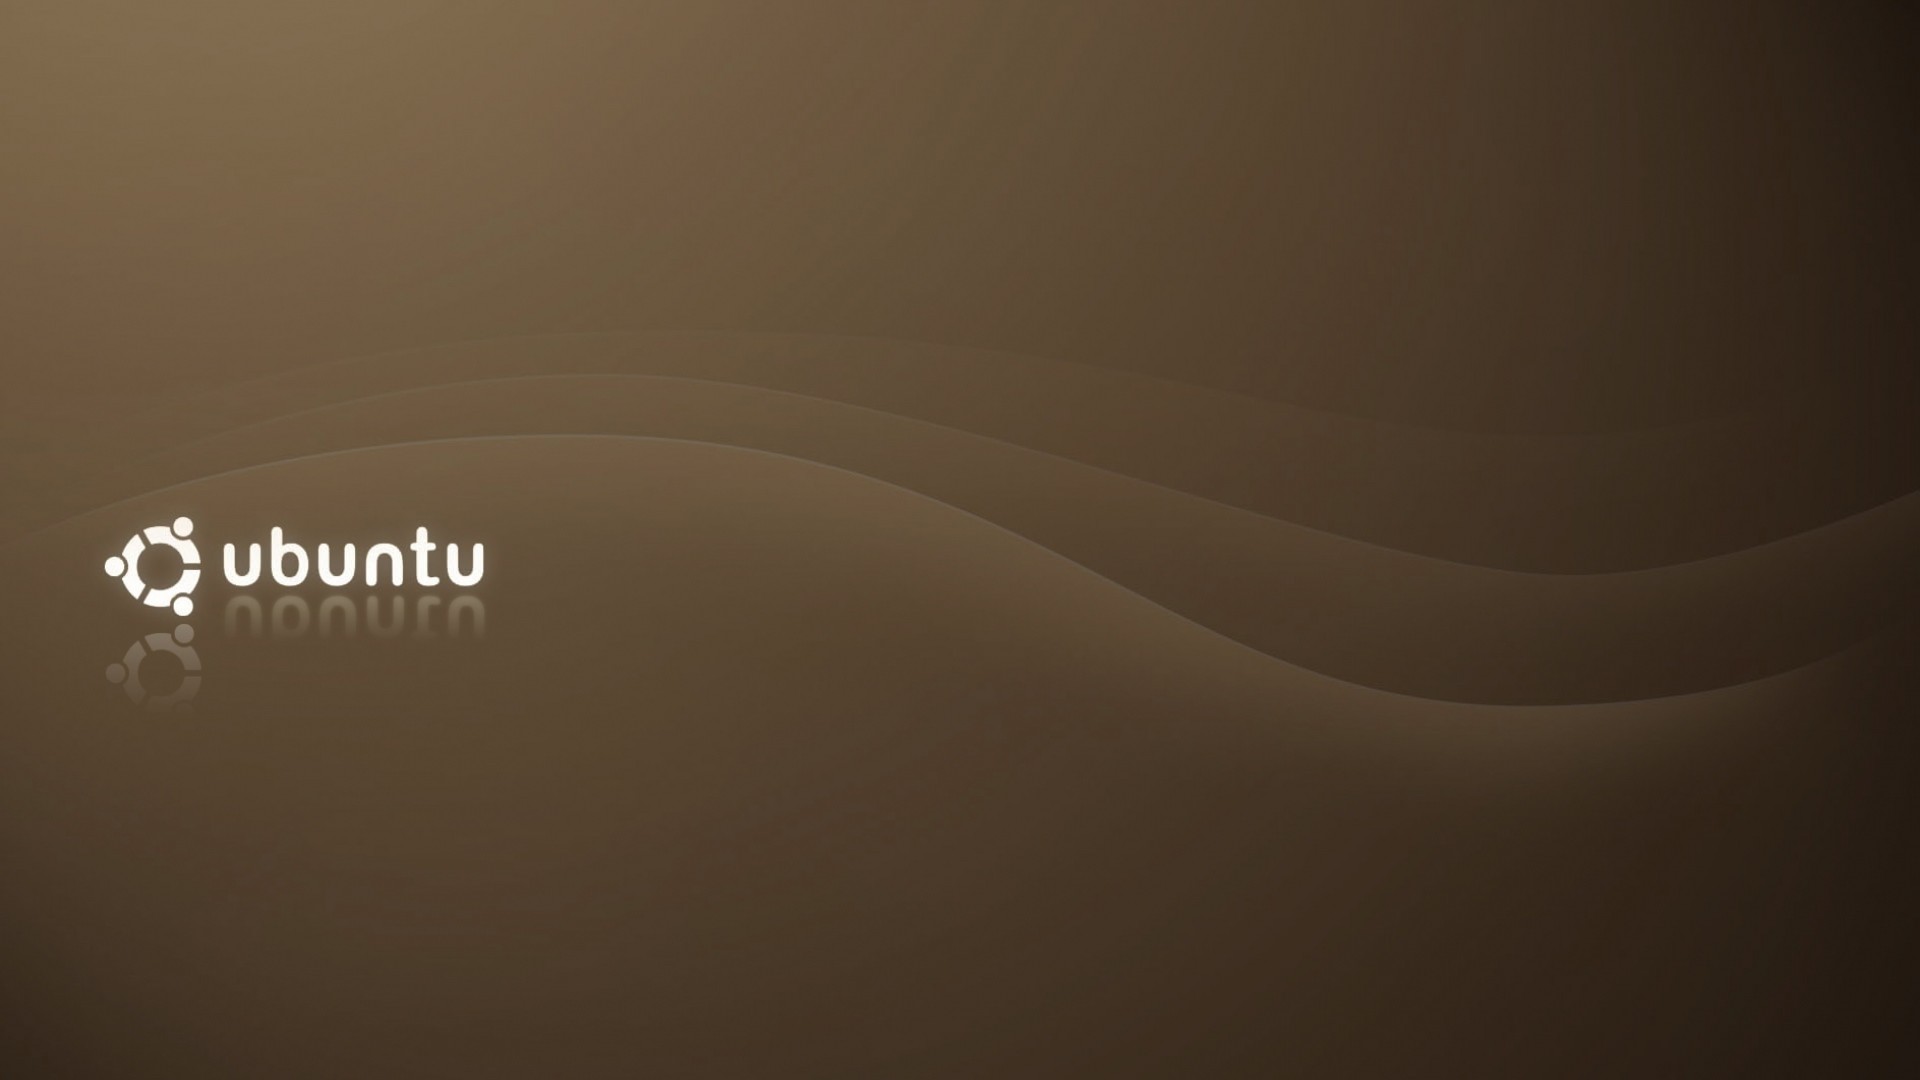 ubuntuの壁紙,褐色,テキスト,黄,空,雰囲気